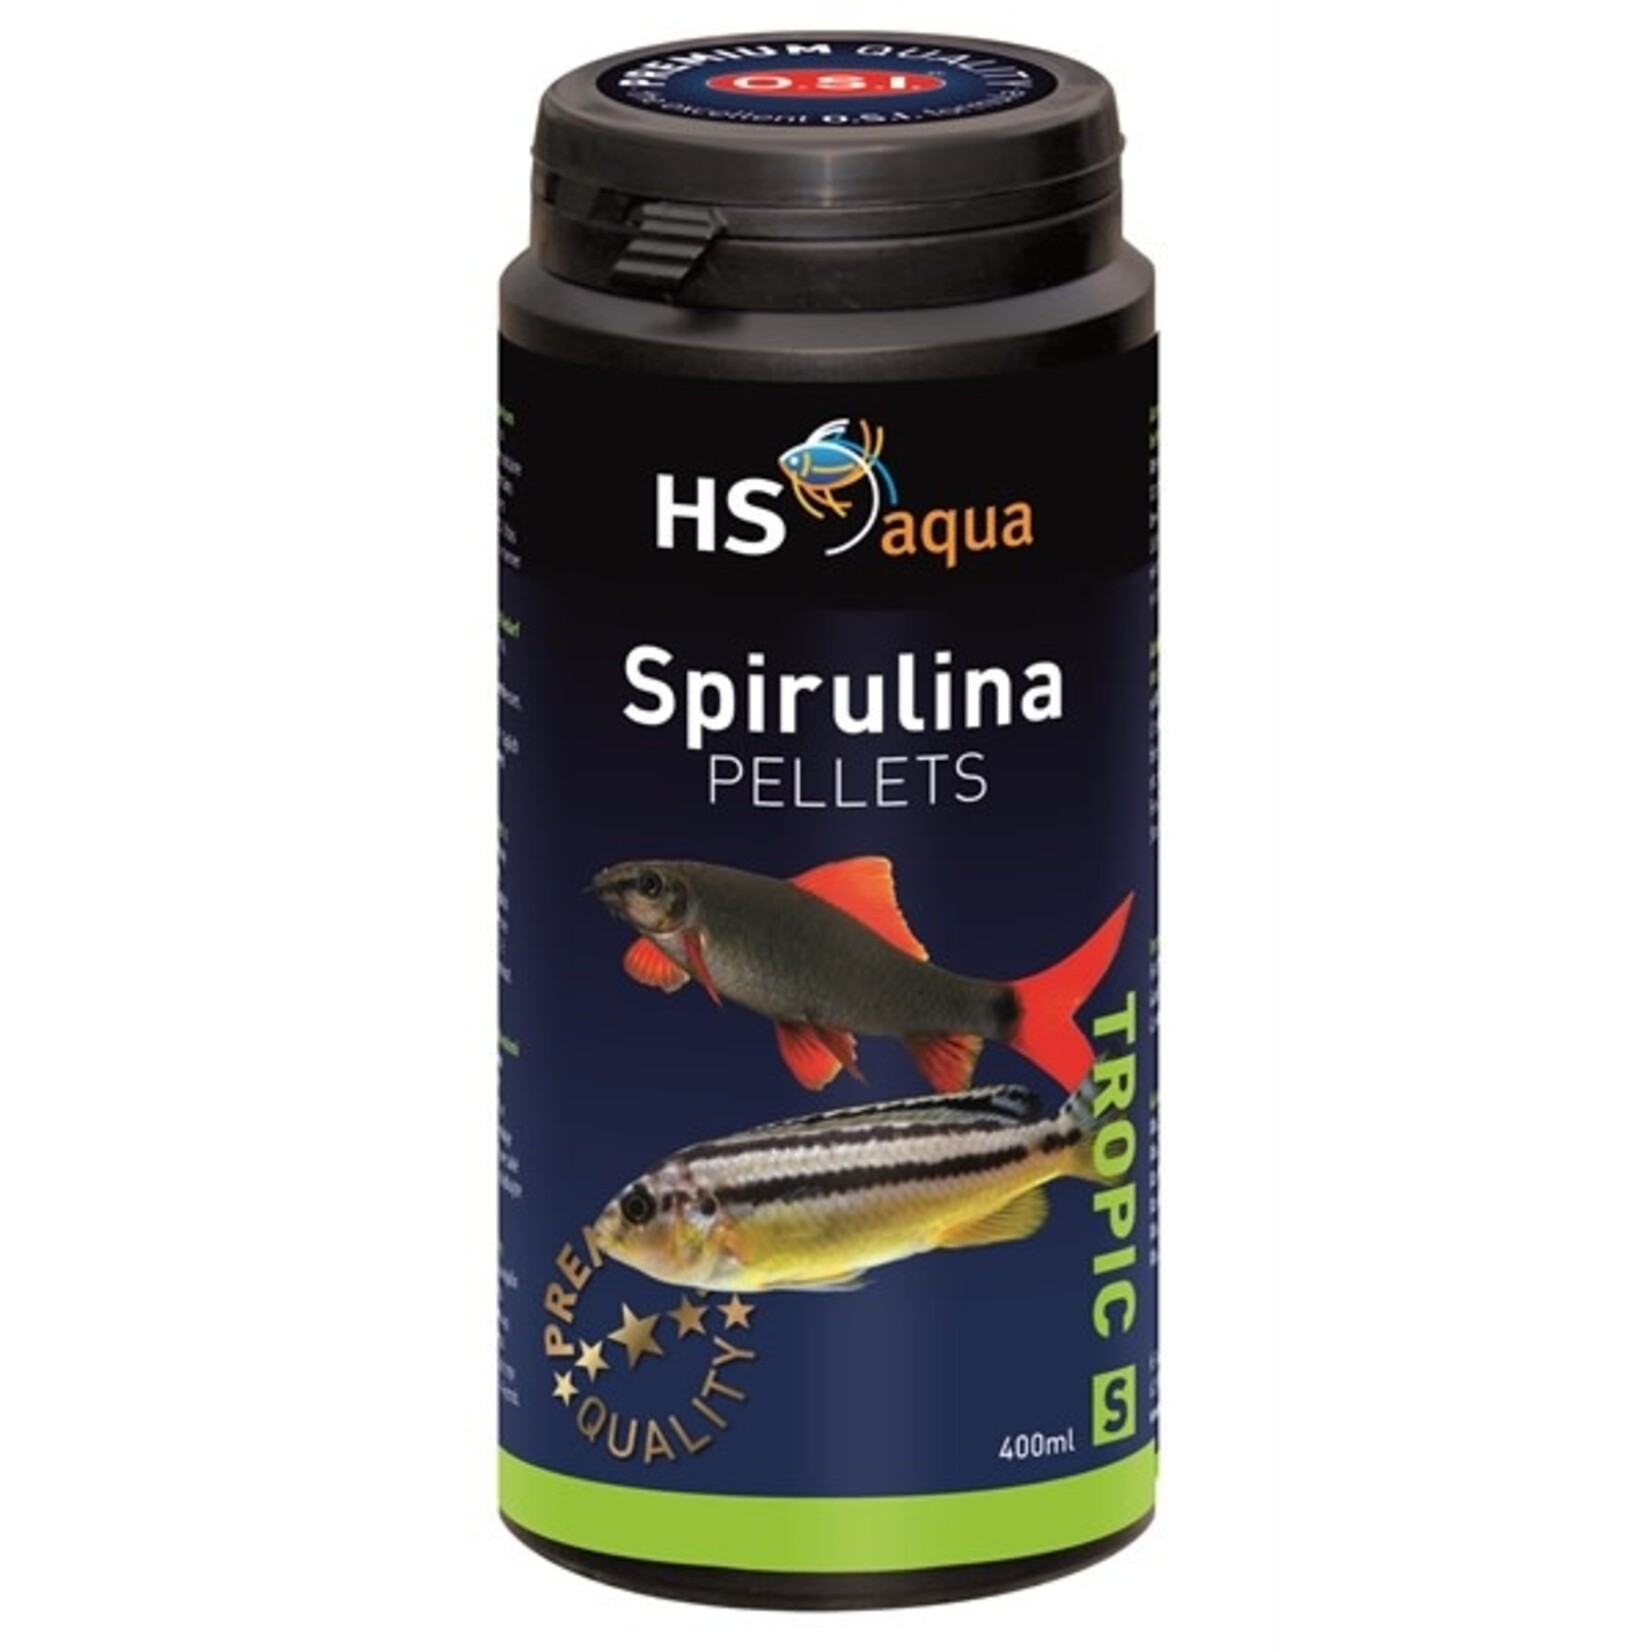 HS Aqua Spirulina pellets s 400 ml